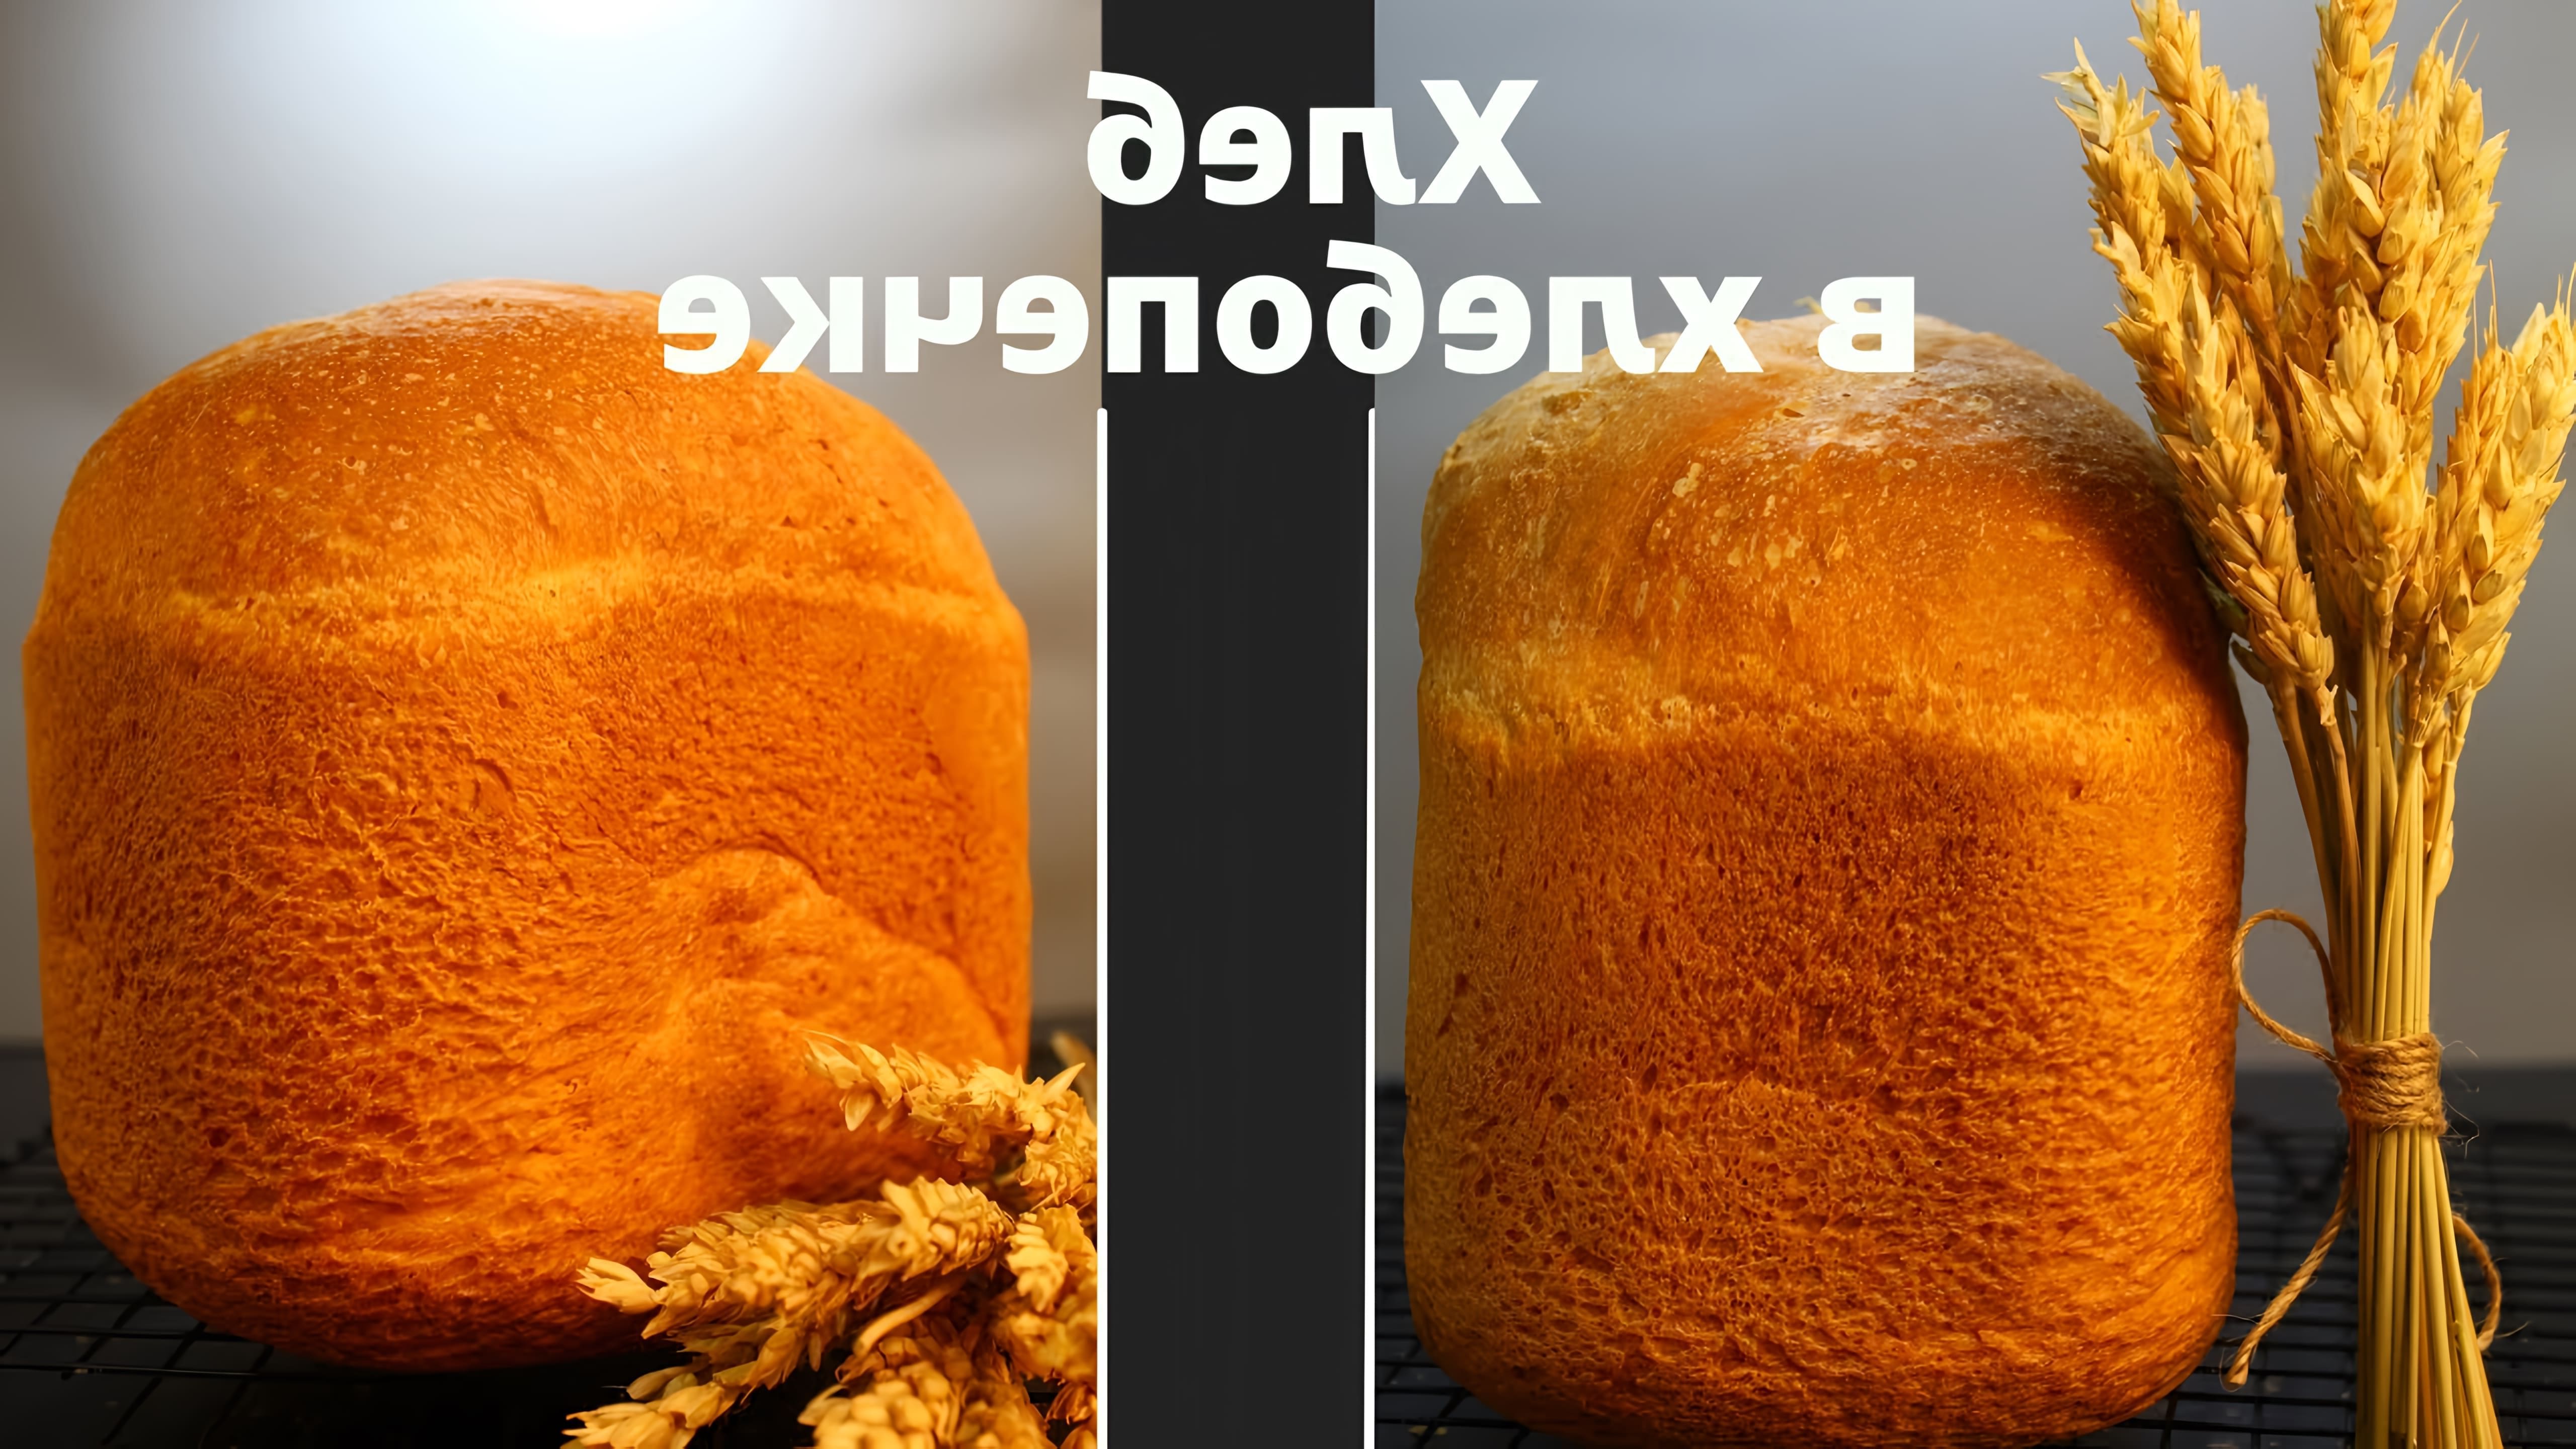 Видео как приготовить обычный белый хлеб в хлебопечке без дрожжей, используя простой рецепт